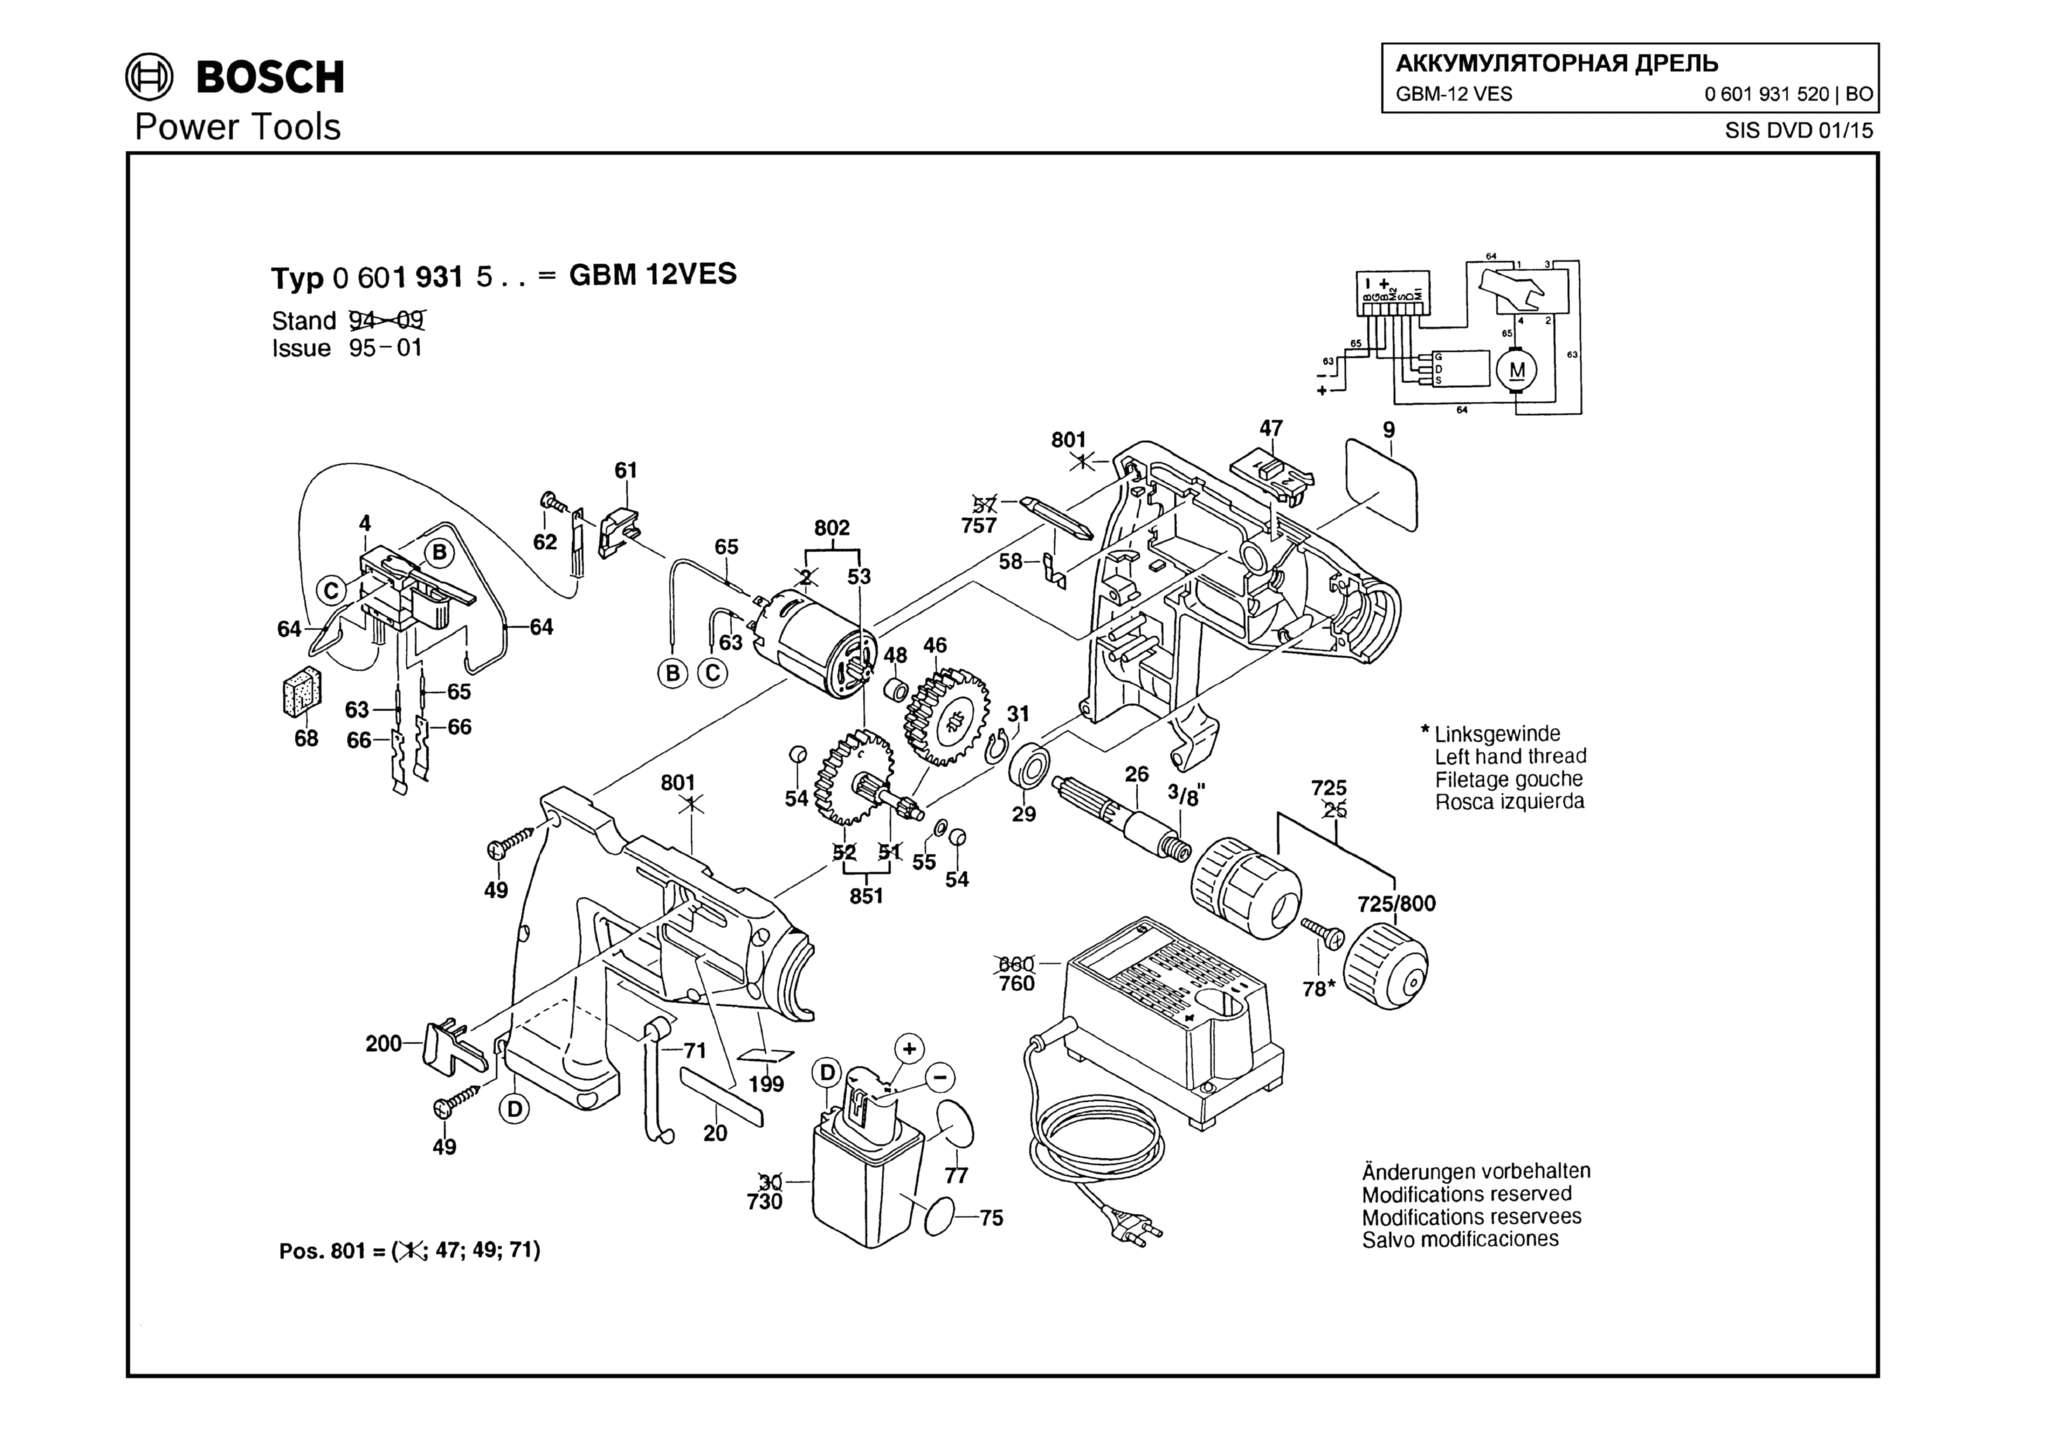 Запчасти, схема и деталировка Bosch GBM-12 VES (ТИП 0601931520)